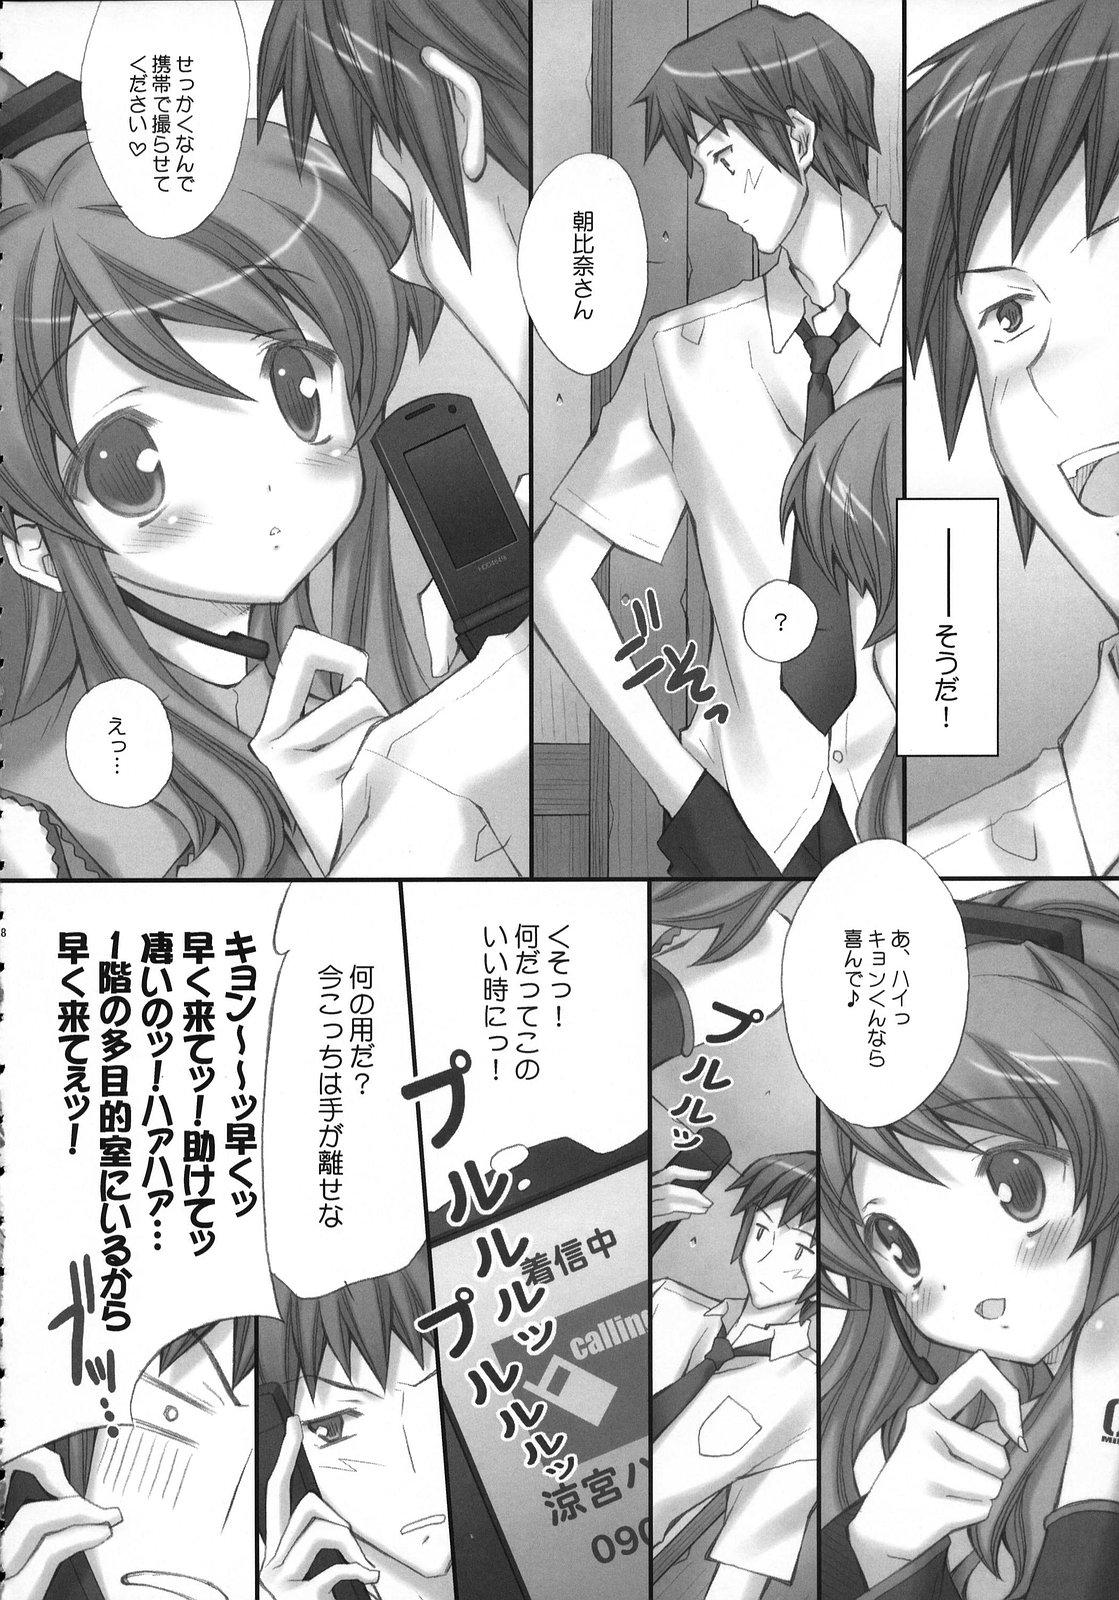 Gostoso ponytail syndrome - The melancholy of haruhi suzumiya Sex Massage - Page 7